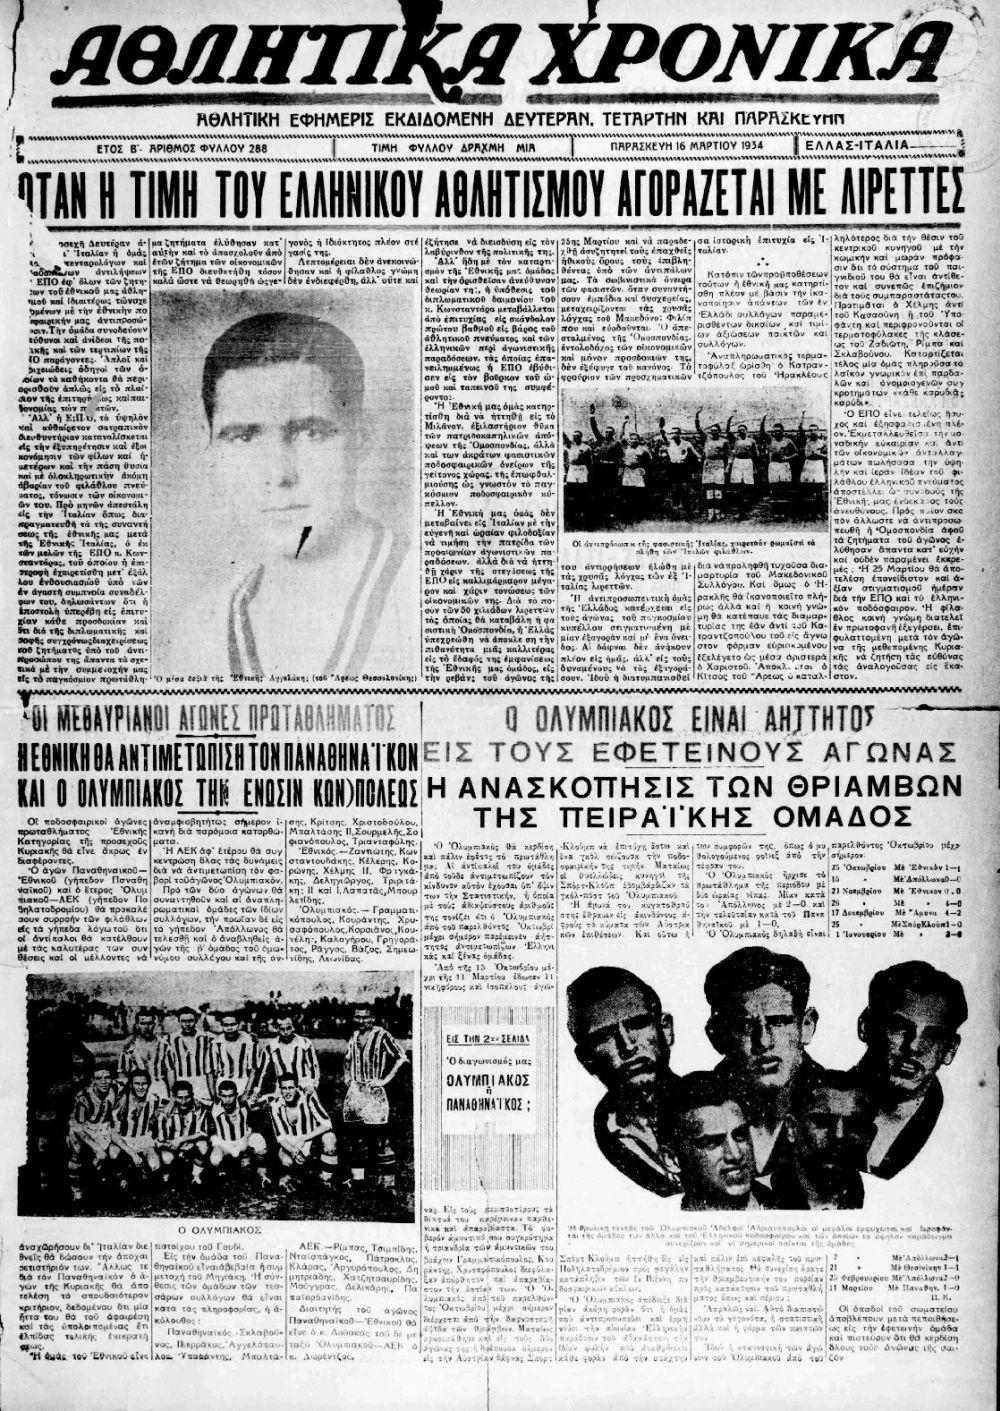 Πρωτοσέλιδο αθλητικής εφημερίδας της εποχής που αποκαλύπτει ότι η Ελλάδα «έστηνε» αγώνα με την φασιστική Ιταλία 